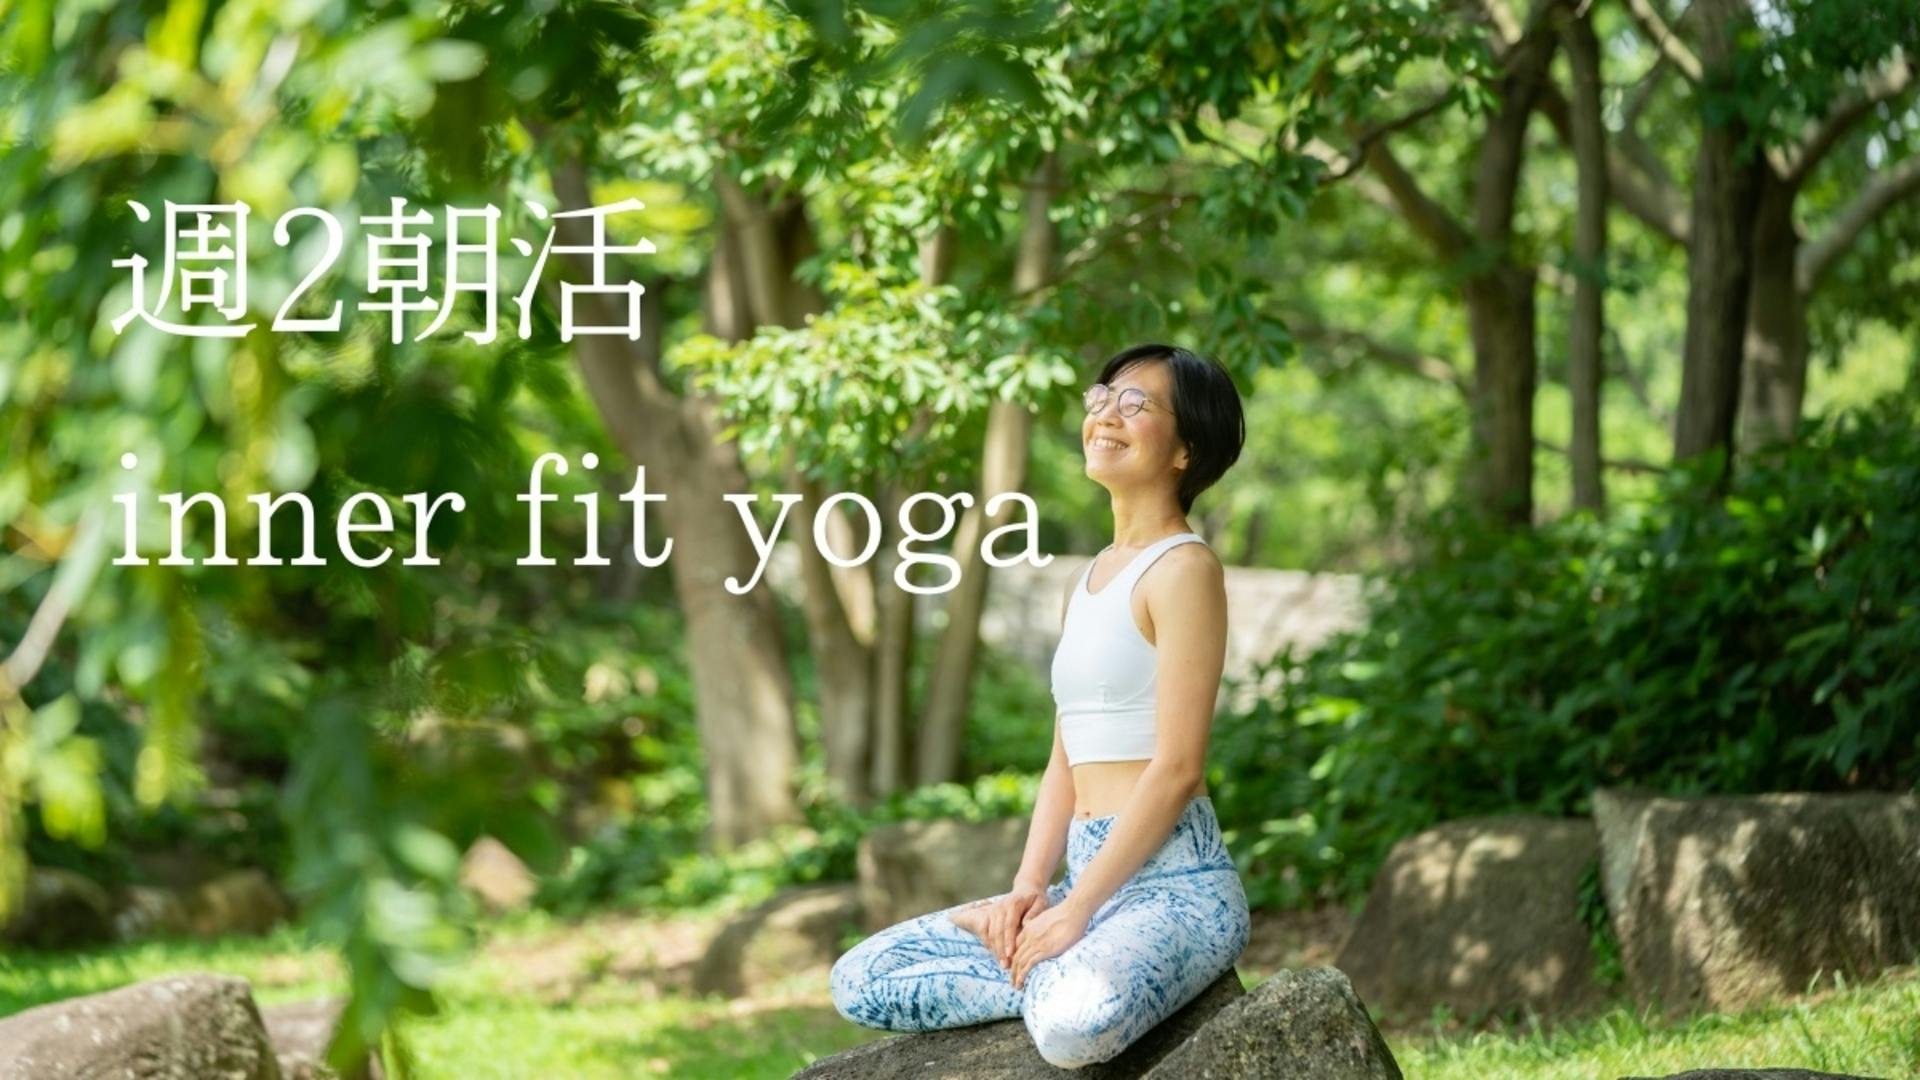 【土曜】朝活 inner fit yoga